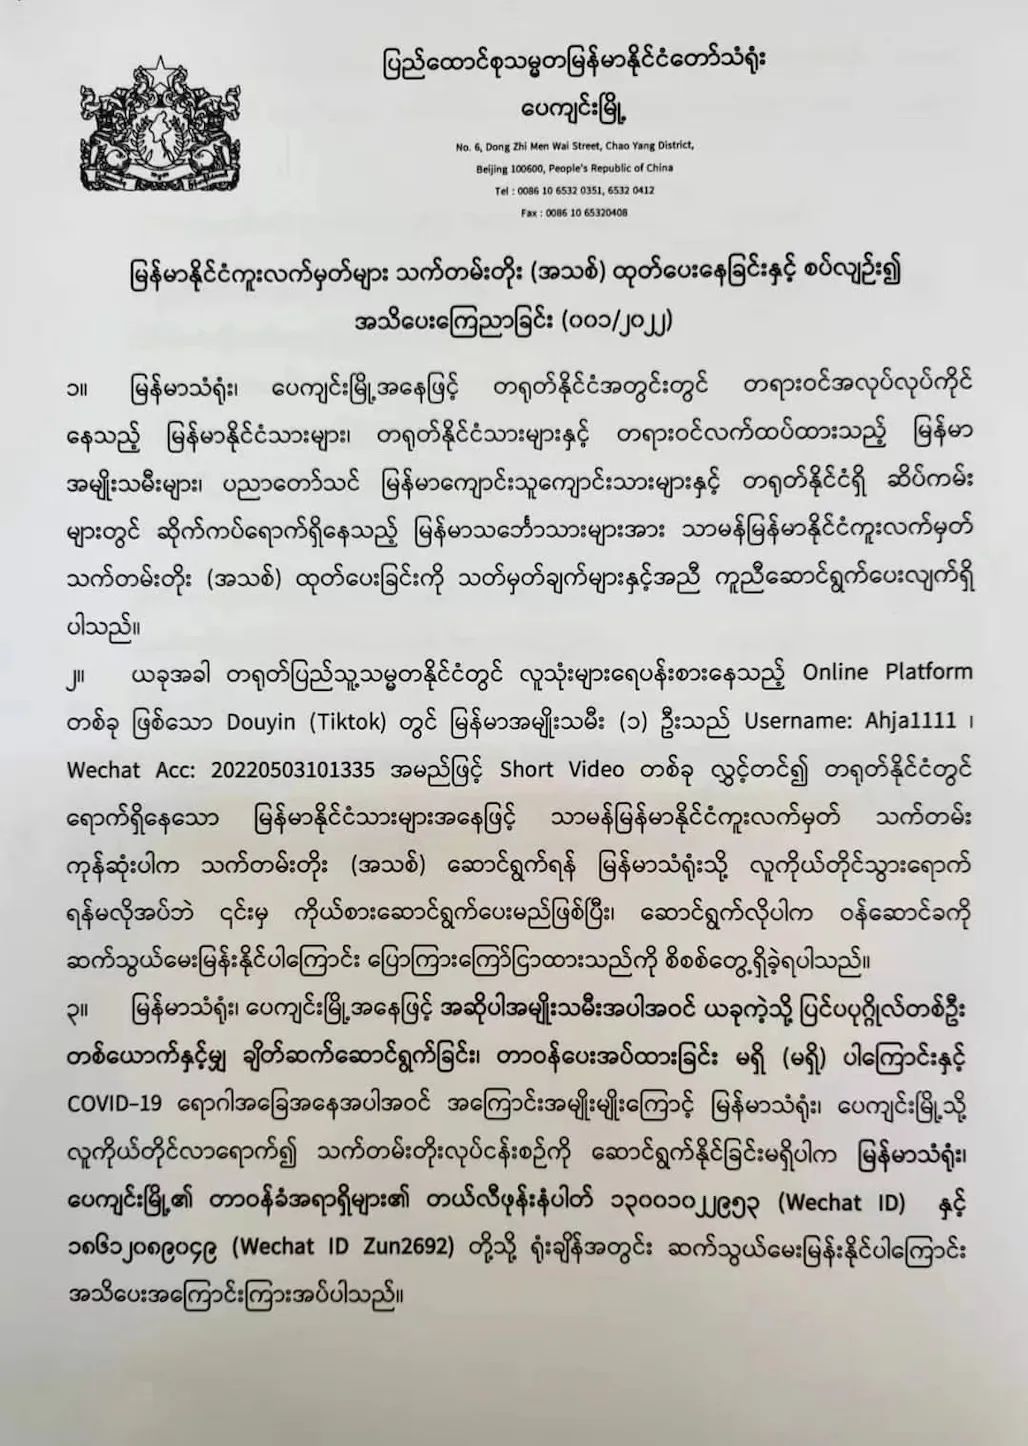 缅甸驻华大使馆“打假” 抖音上这些“代理护照延期”的内容千万别信